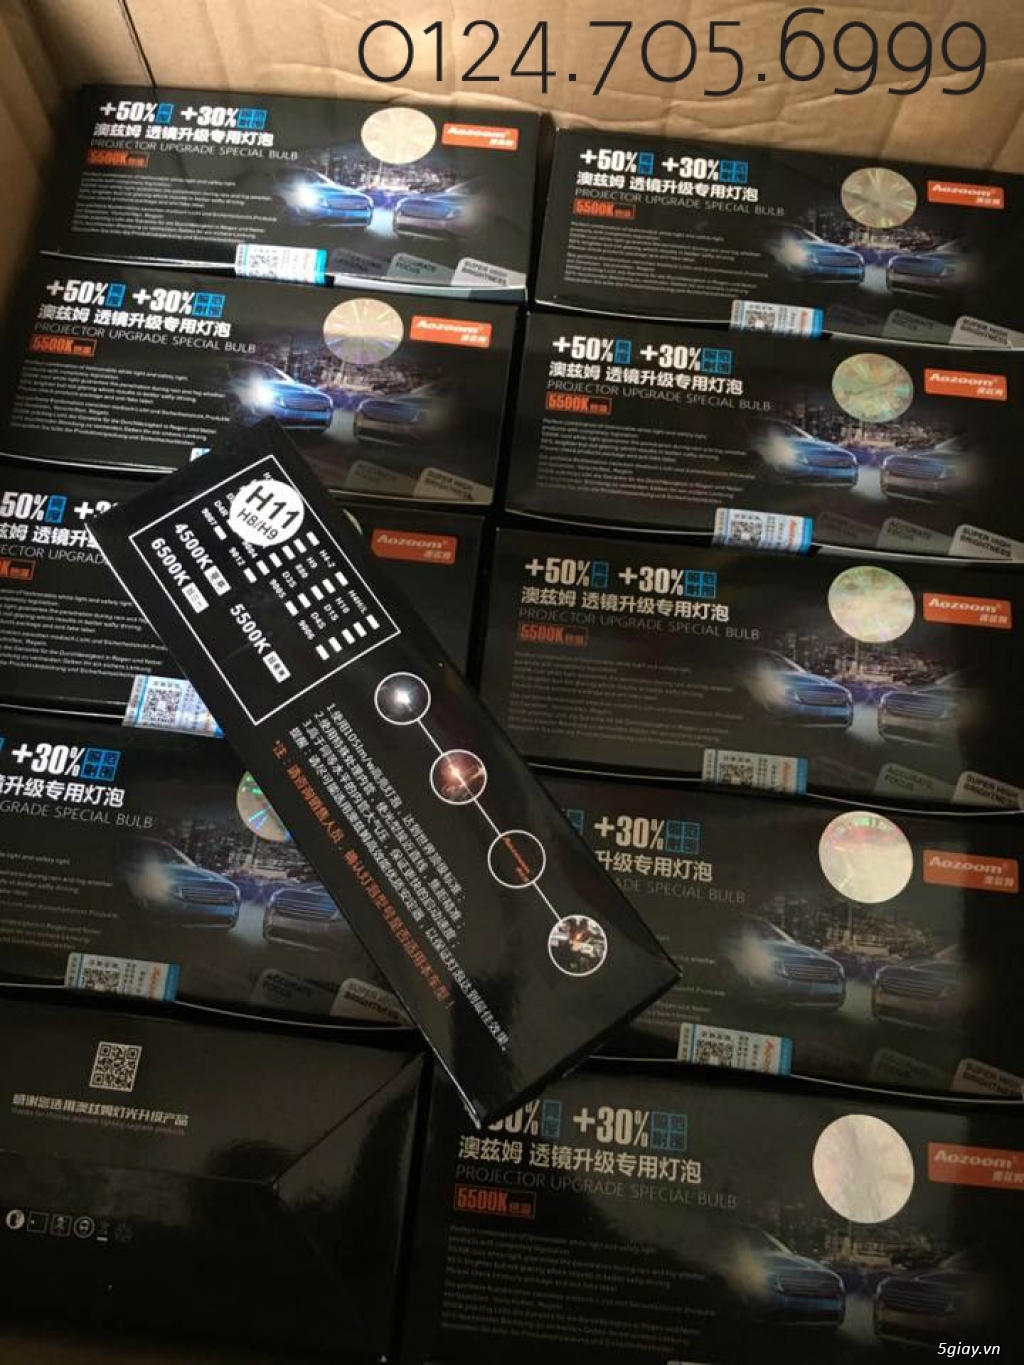 Phân phối số lượng đèn xenon chính hãng Aozoom bảo hành 3 năm - 1